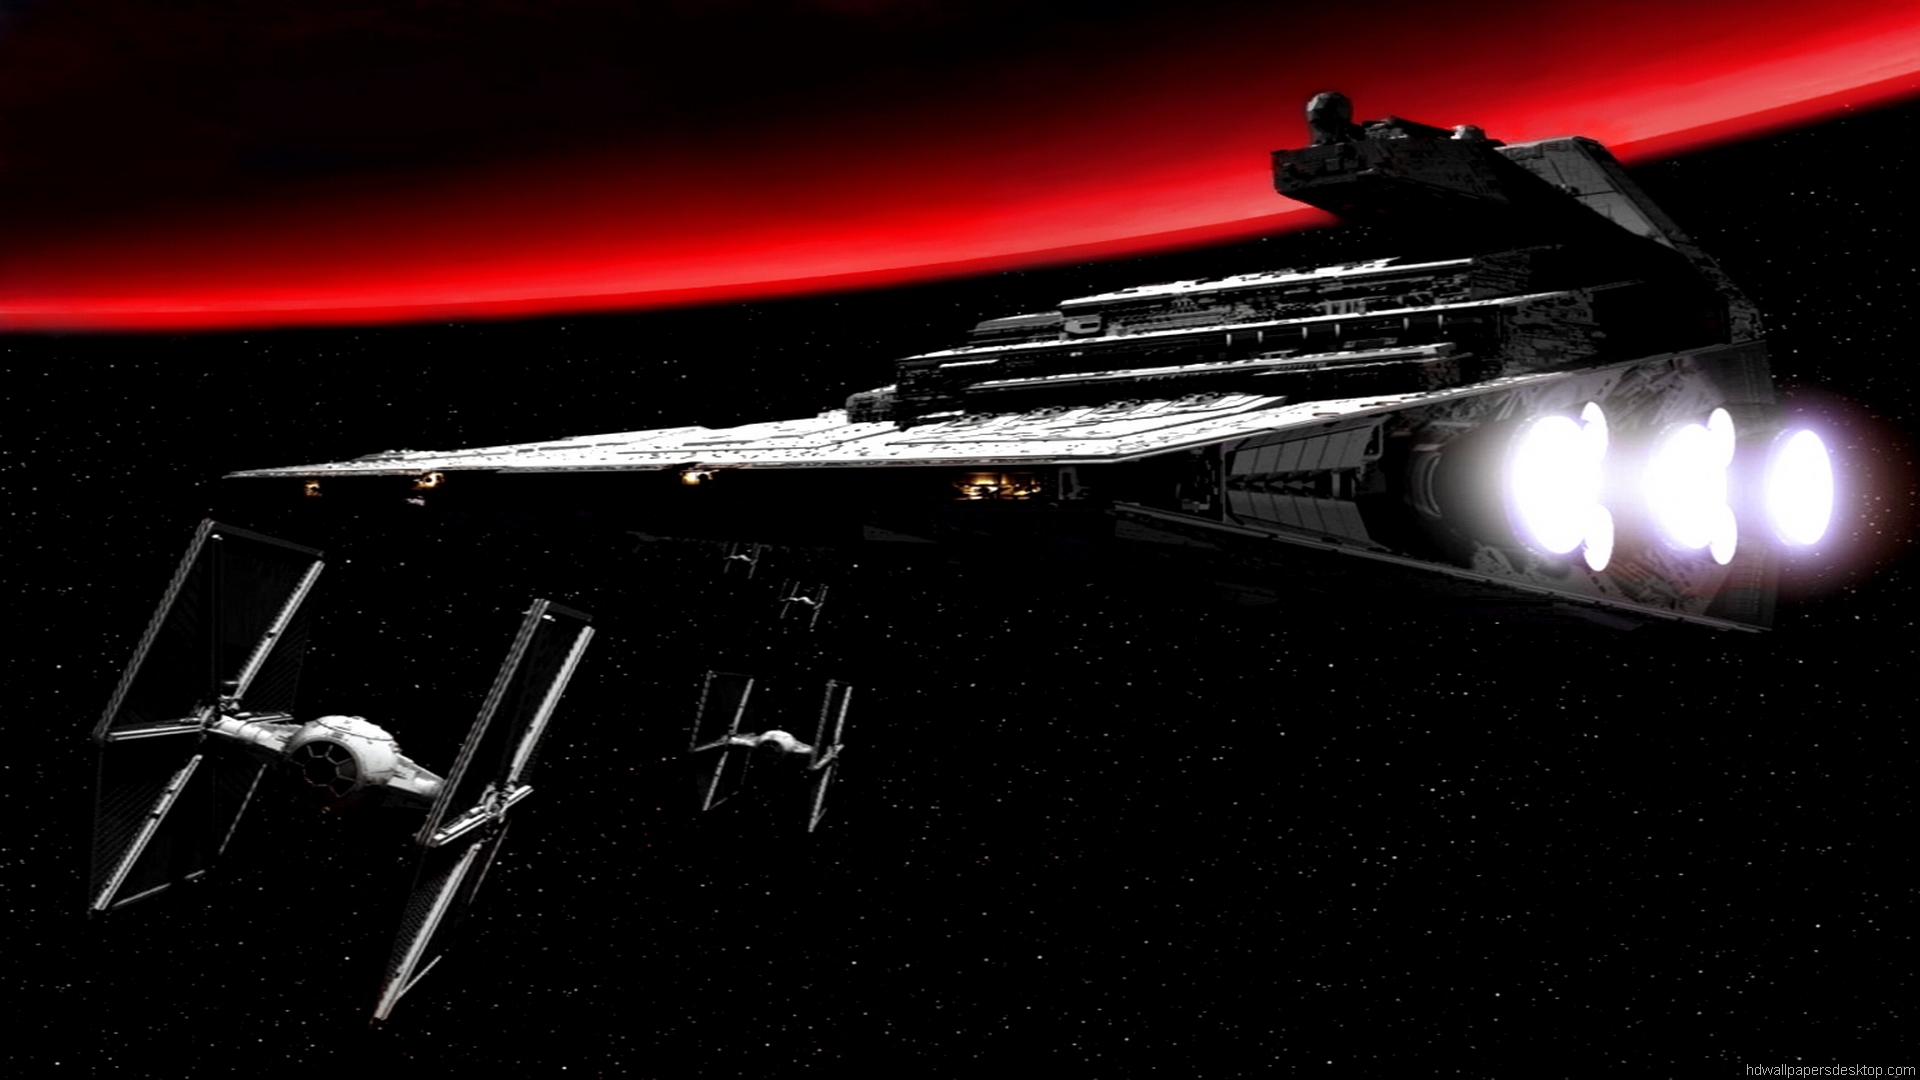 Star Wars Full HD Wallpaper 1080p Desktop star wars empire